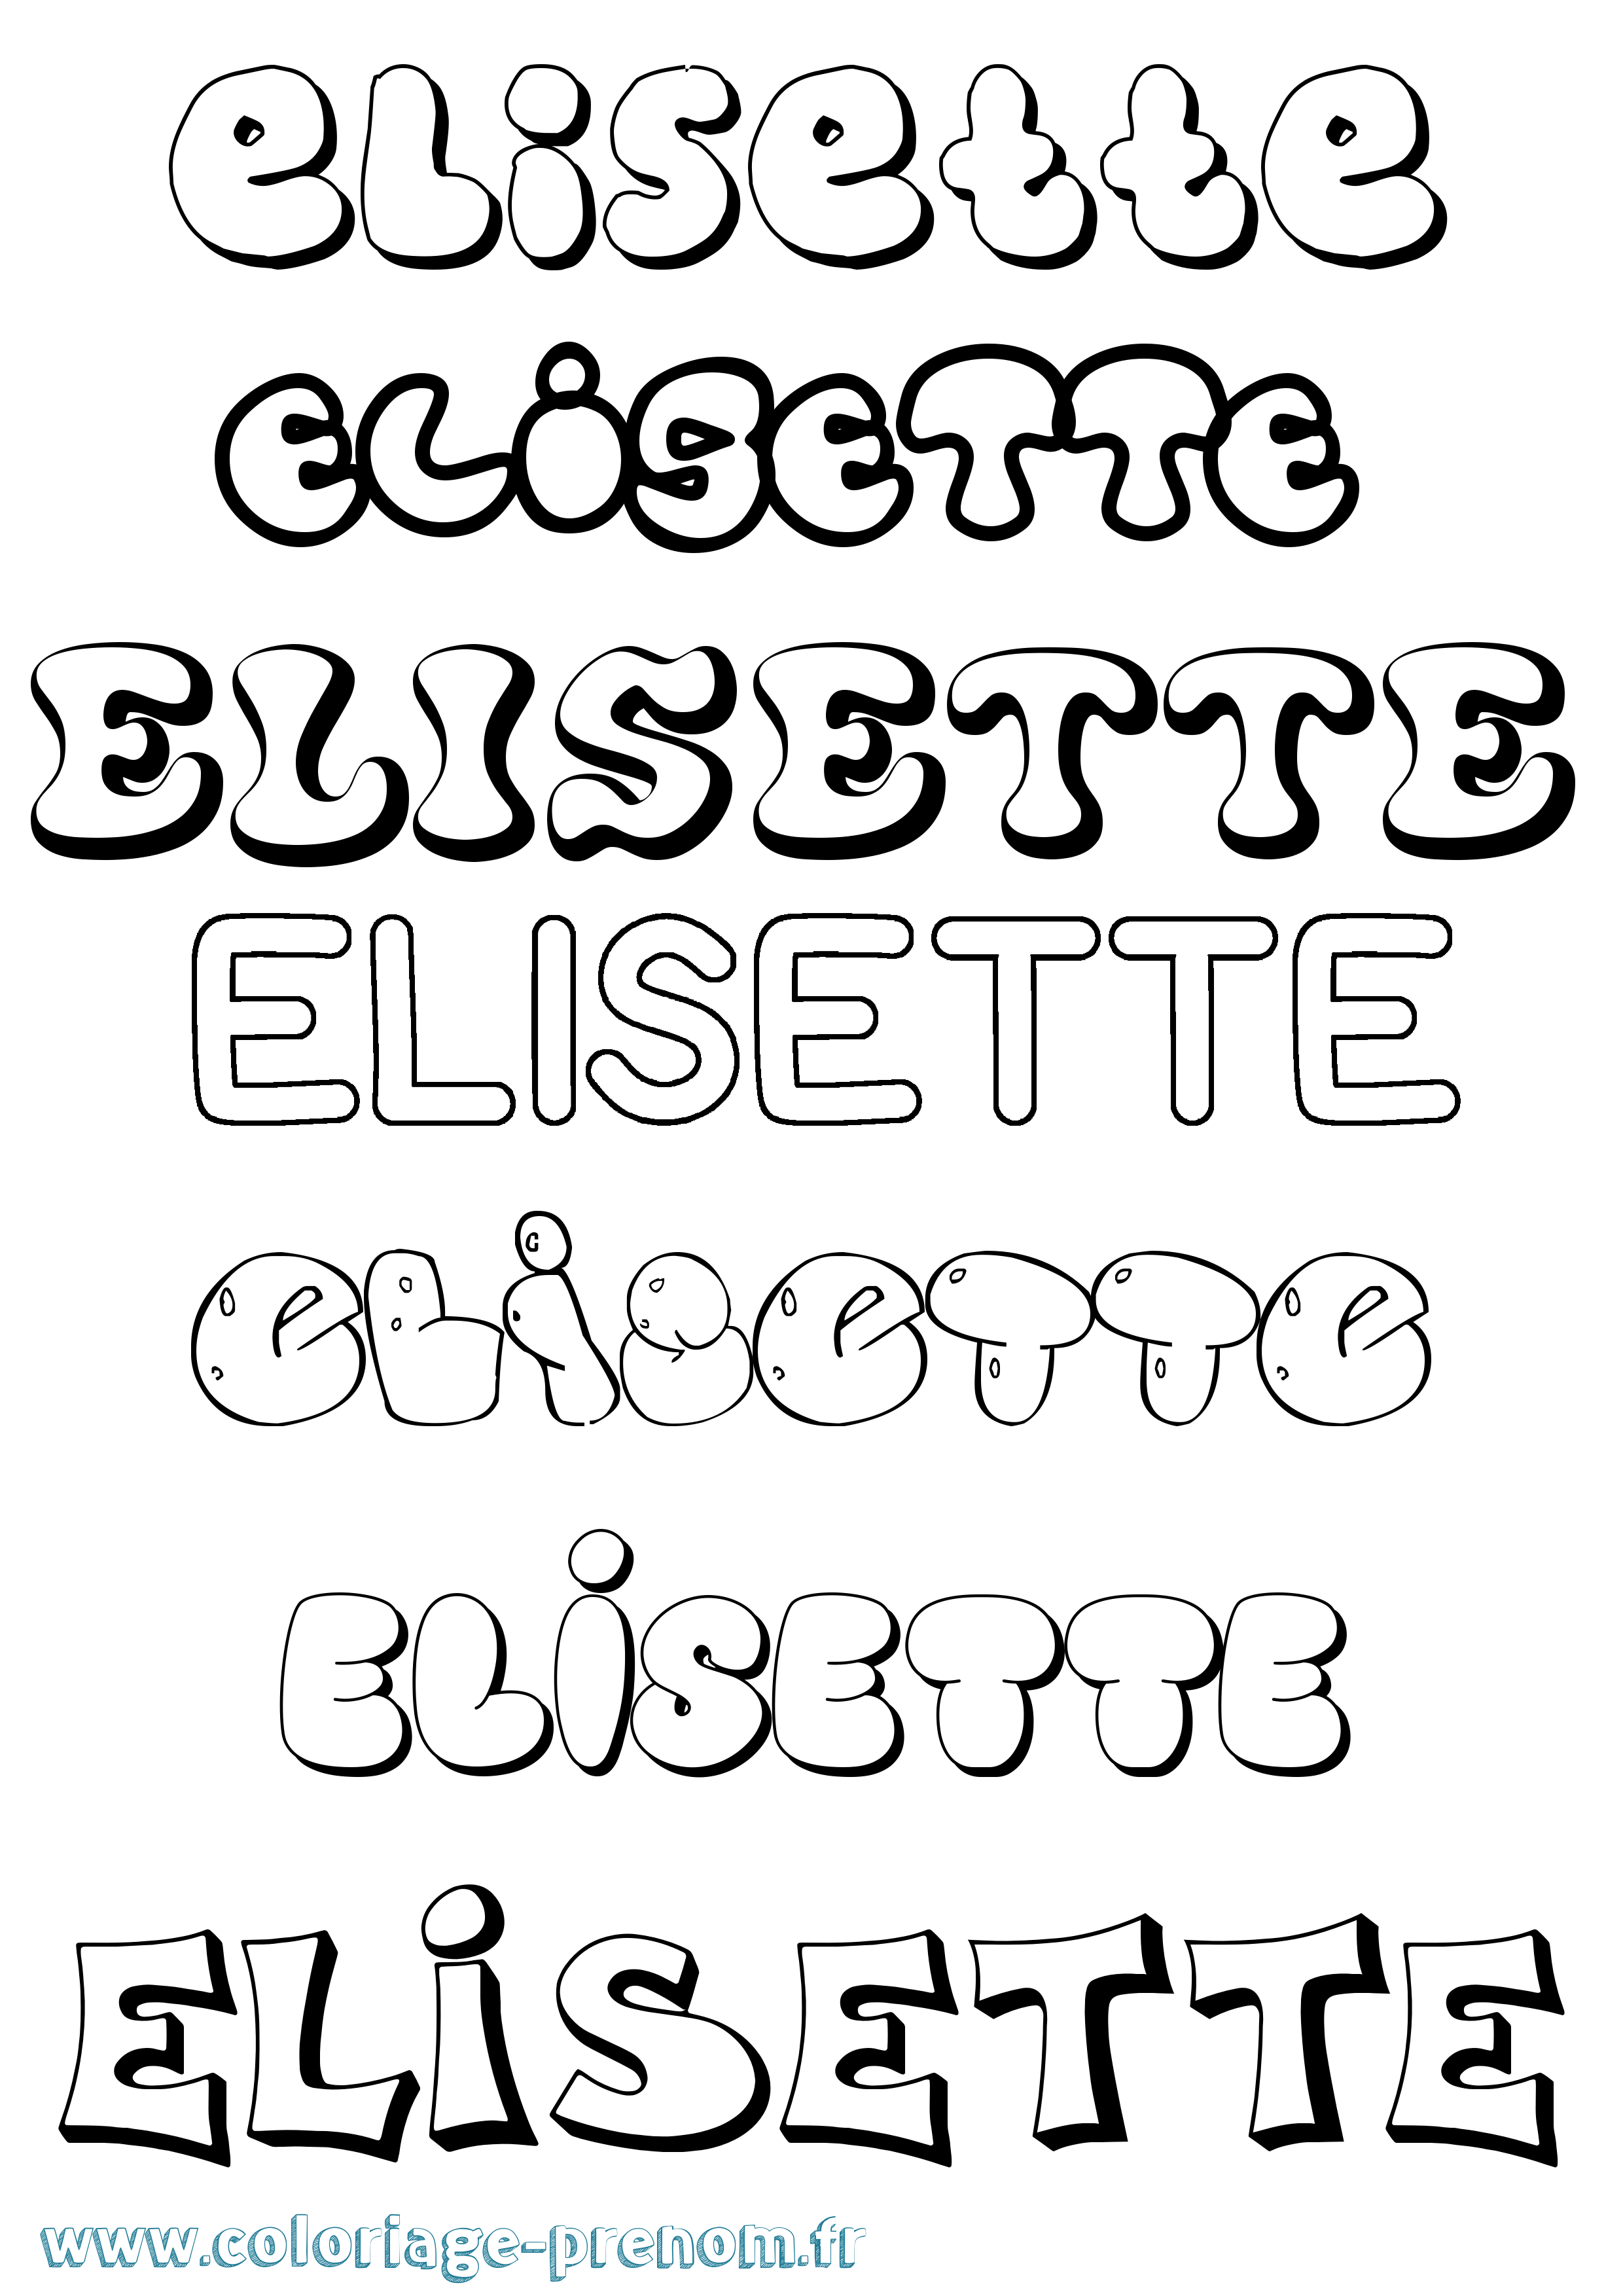 Coloriage prénom Elisette Bubble